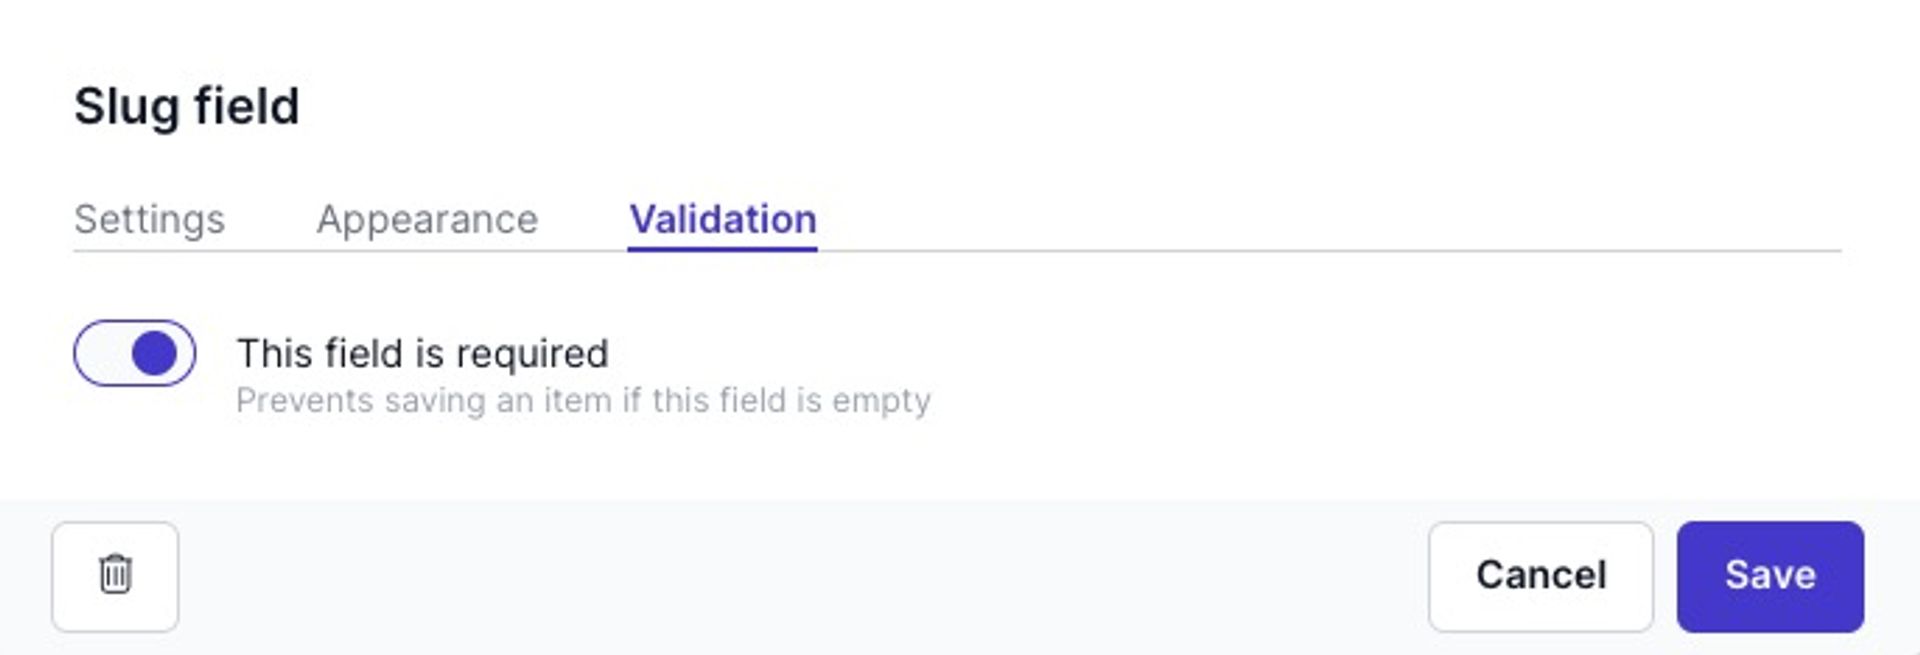 Slug field validation